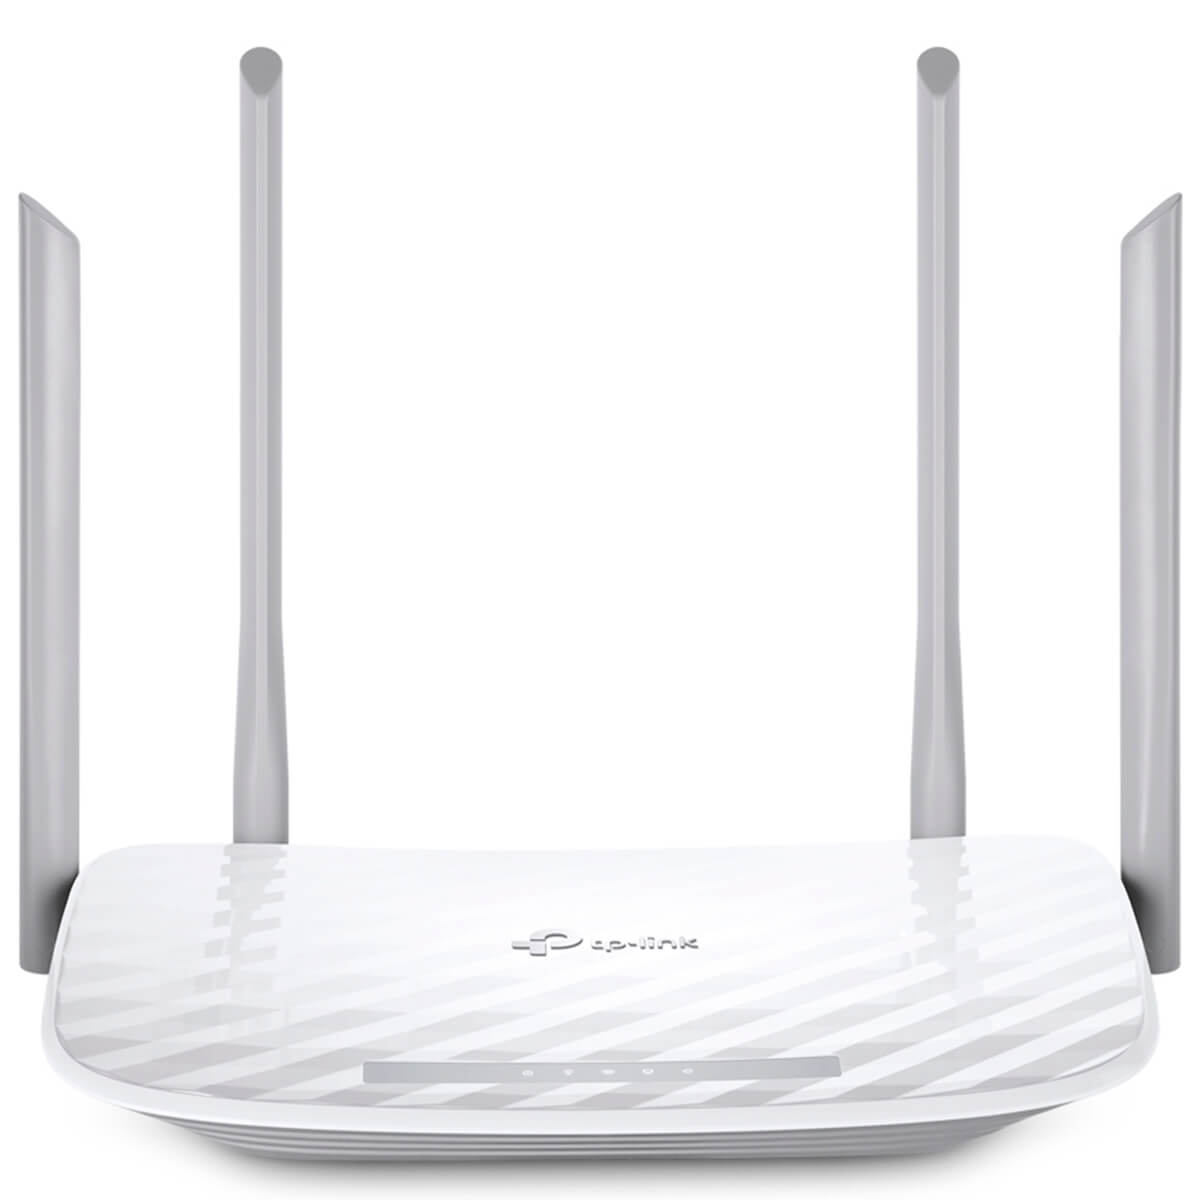 Wi-Fi Роутер TP-LINK Archer C50 (AC1200, 1*Wan, 4*LAN, 1*USB, 2 антенны) (Archer C50)